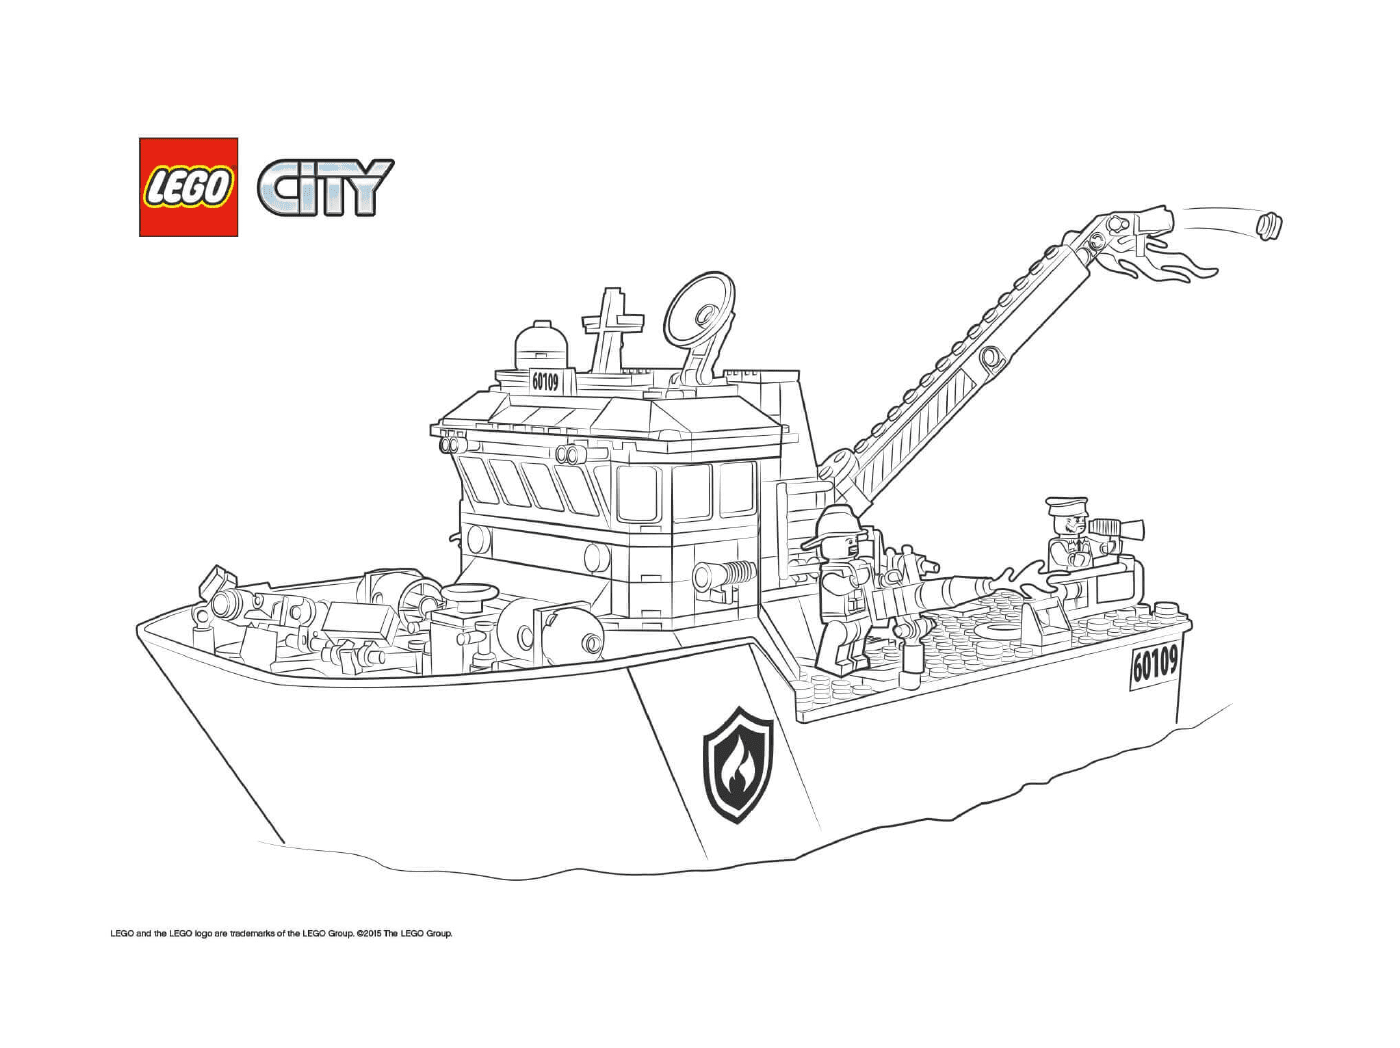   Bateau de pompiers Lego City 